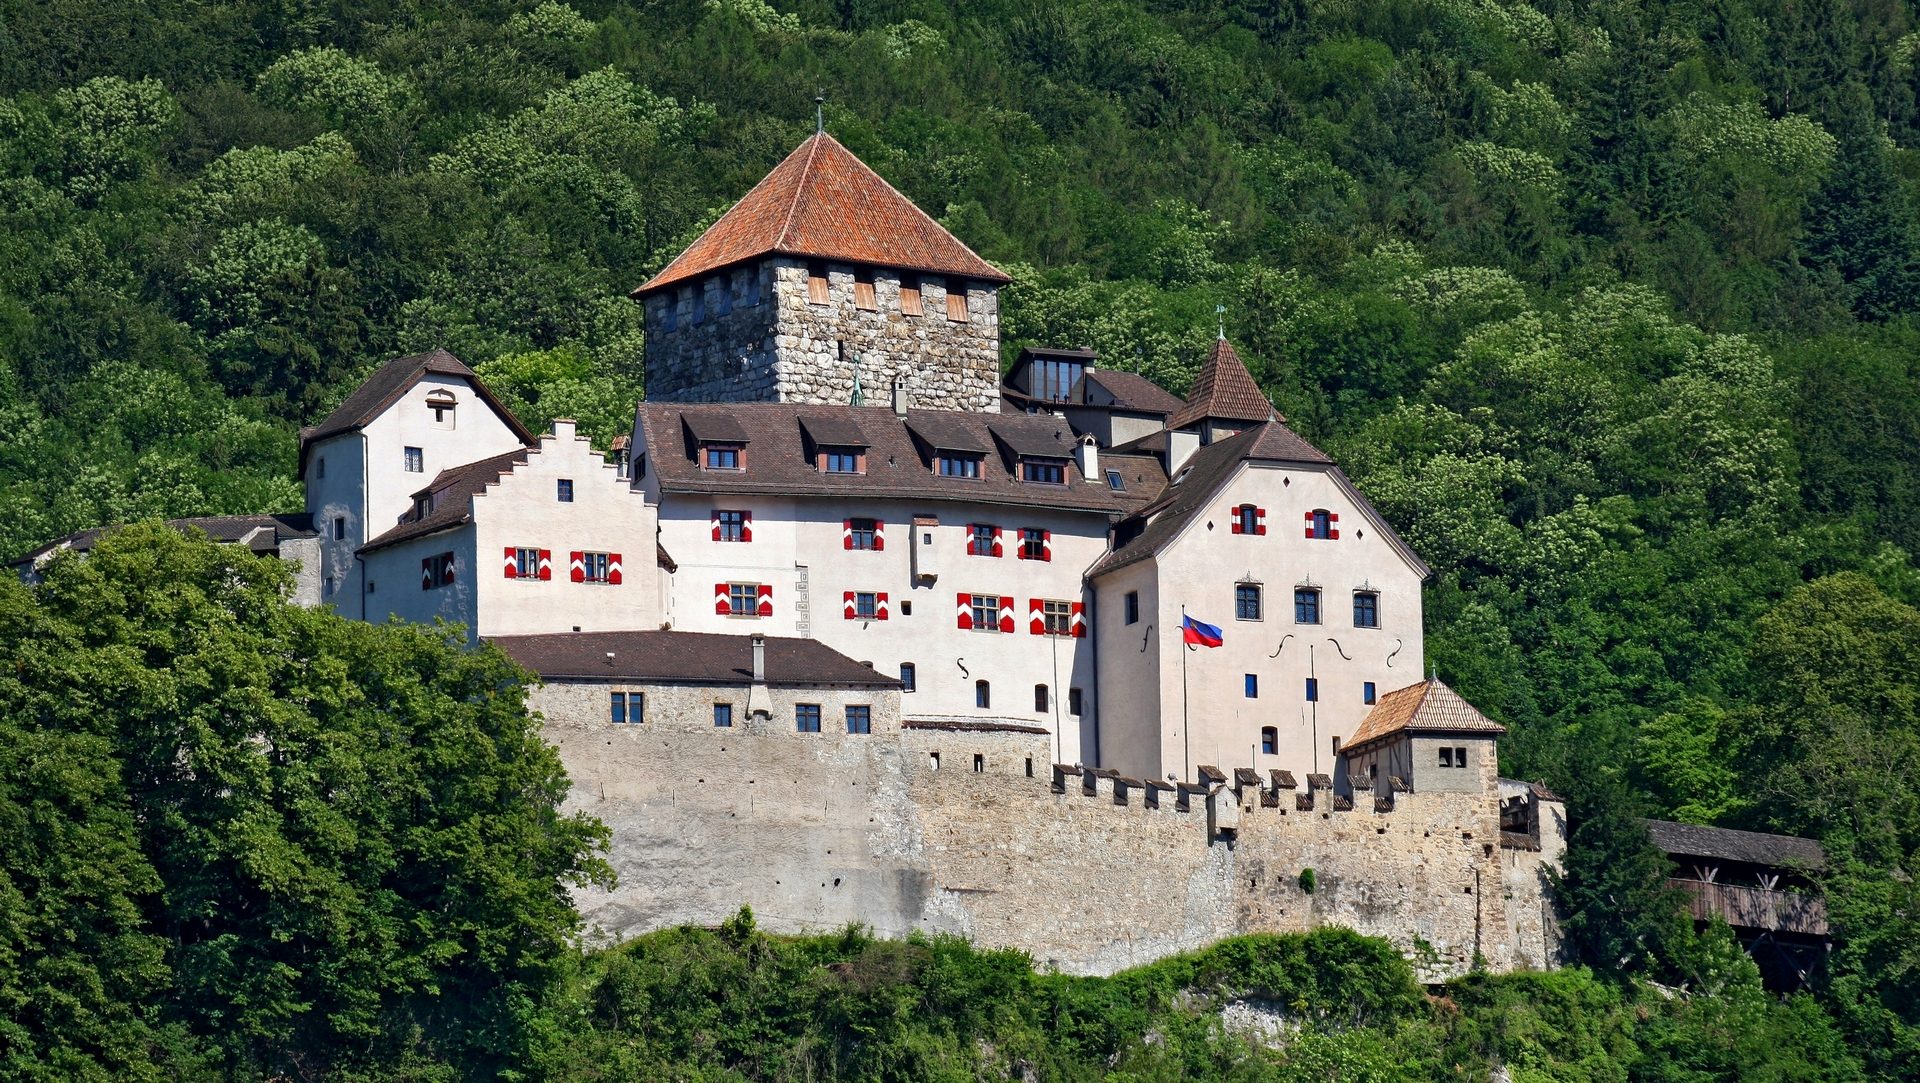 Le château de Vaduz, au Liechtenstein (photo wikimedia commons Presse- und Informationsamt, Vaduz)